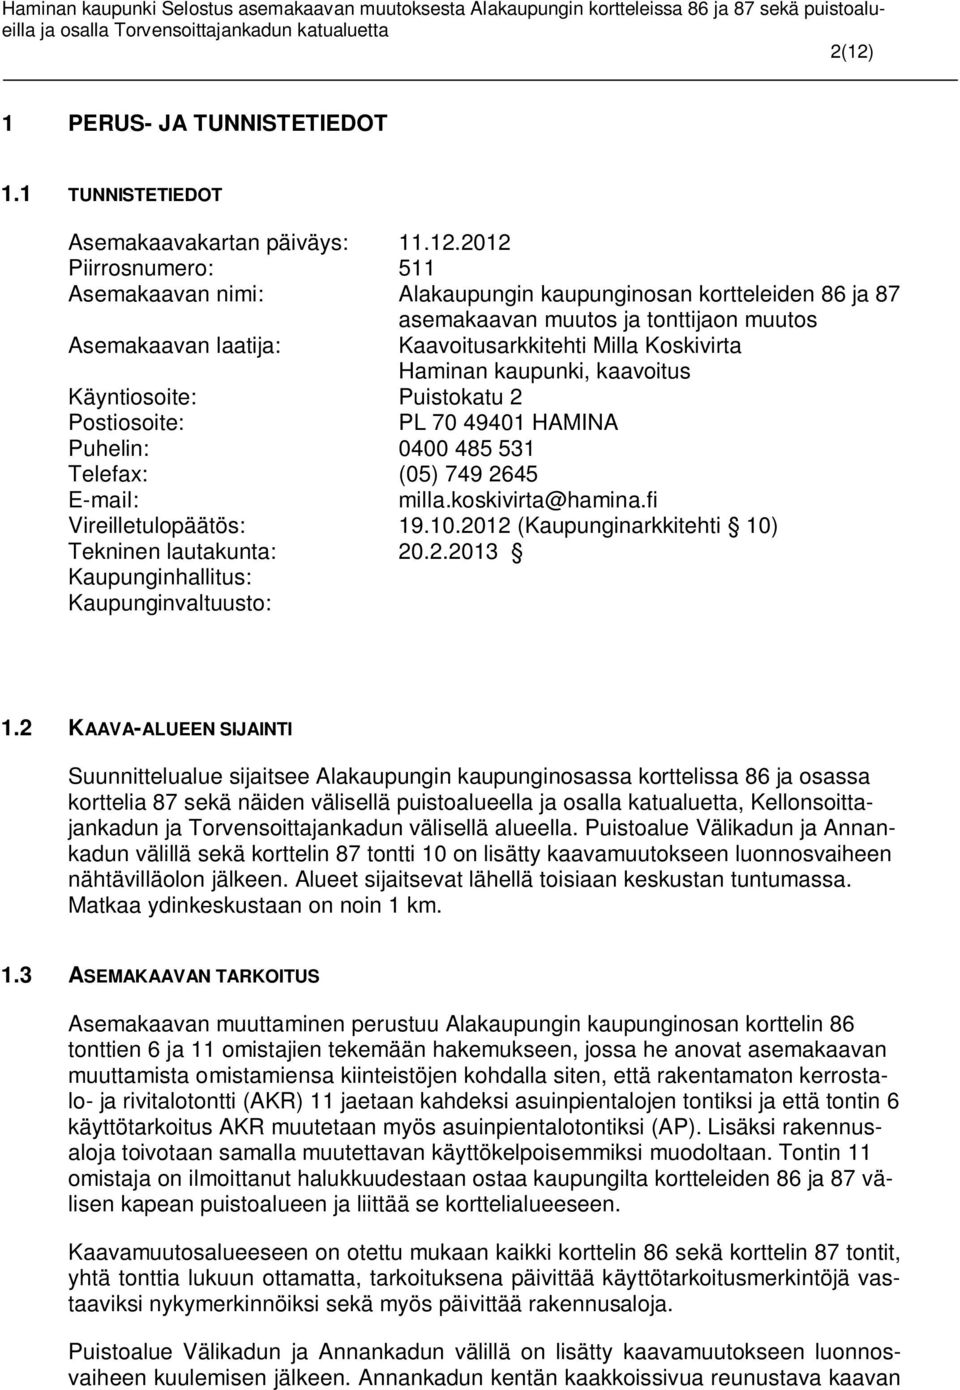 749 2645 E-mail: milla.koskivirta@hamina.fi Vireilletulopäätös: 19.10.2012 (Kaupunginarkkitehti 10) Tekninen lautakunta: 20.2.2013 Kaupunginhallitus: Kaupunginvaltuusto: 1.